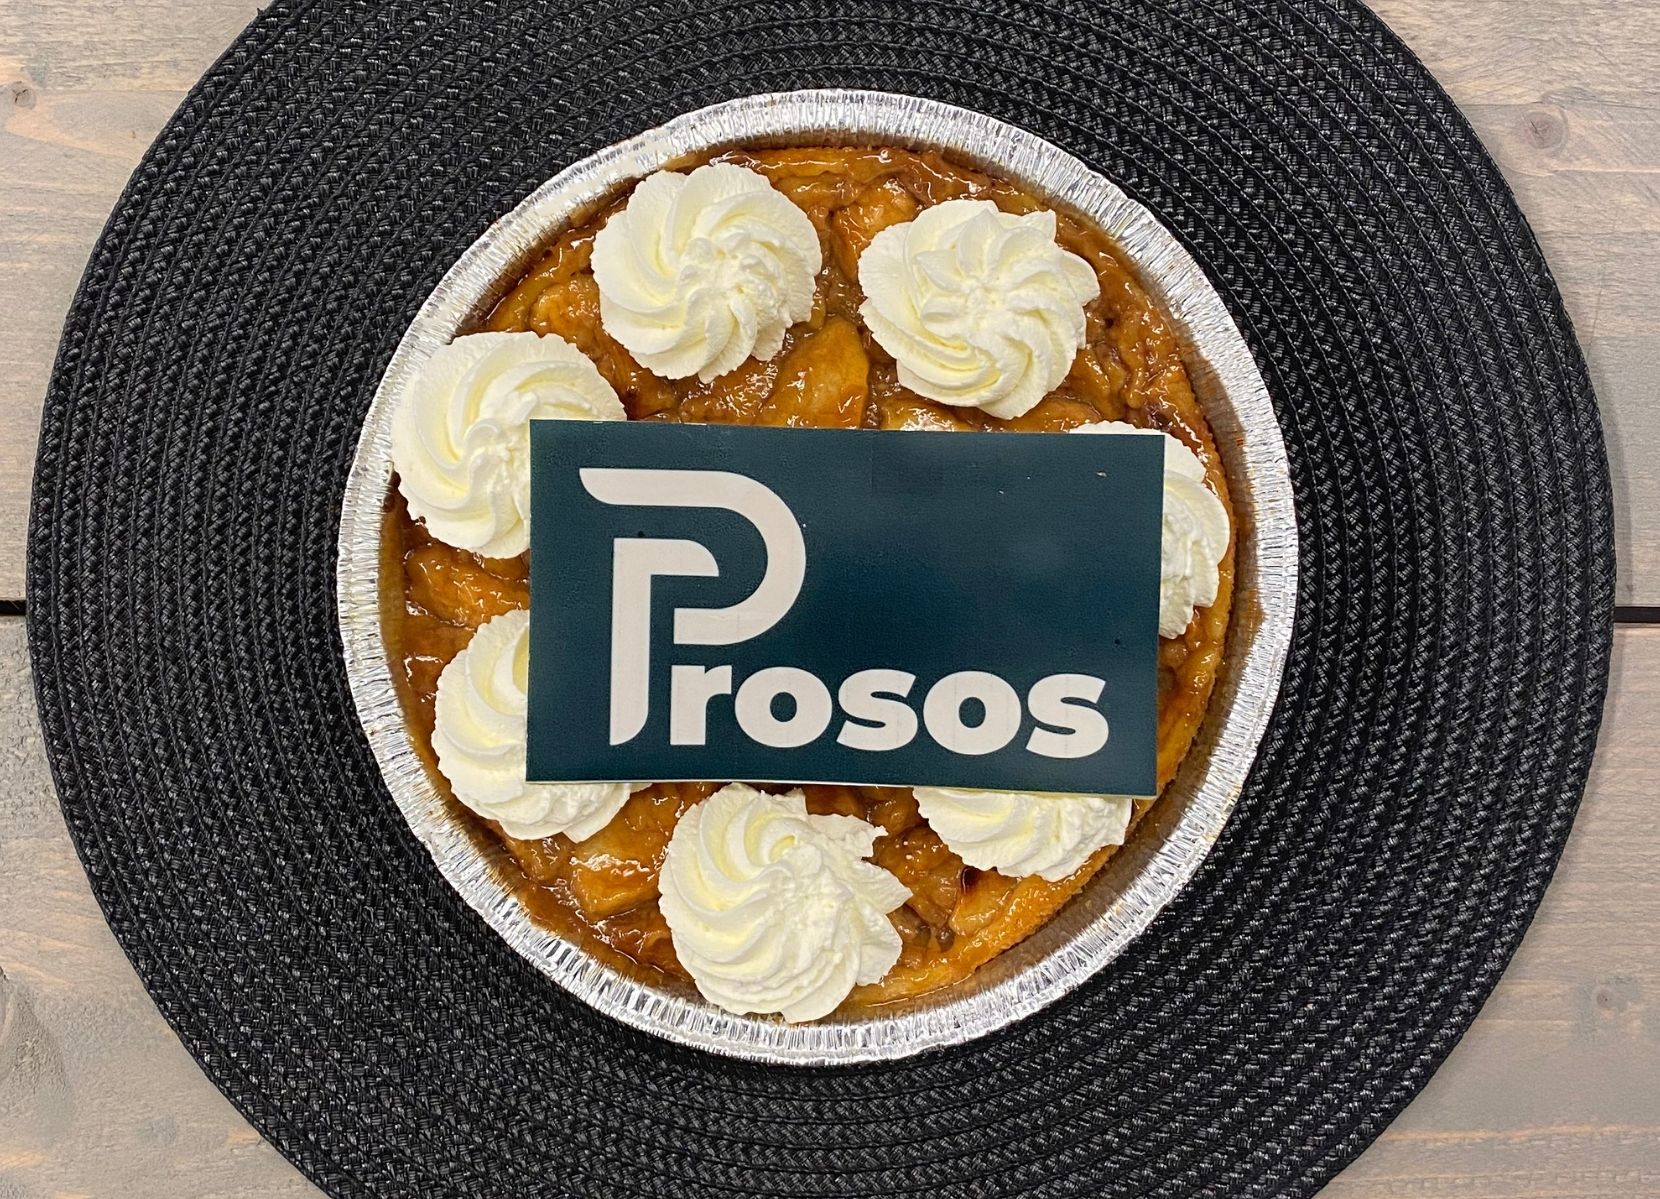 Prosos lanceert een gloednieuwe huisstijl en website